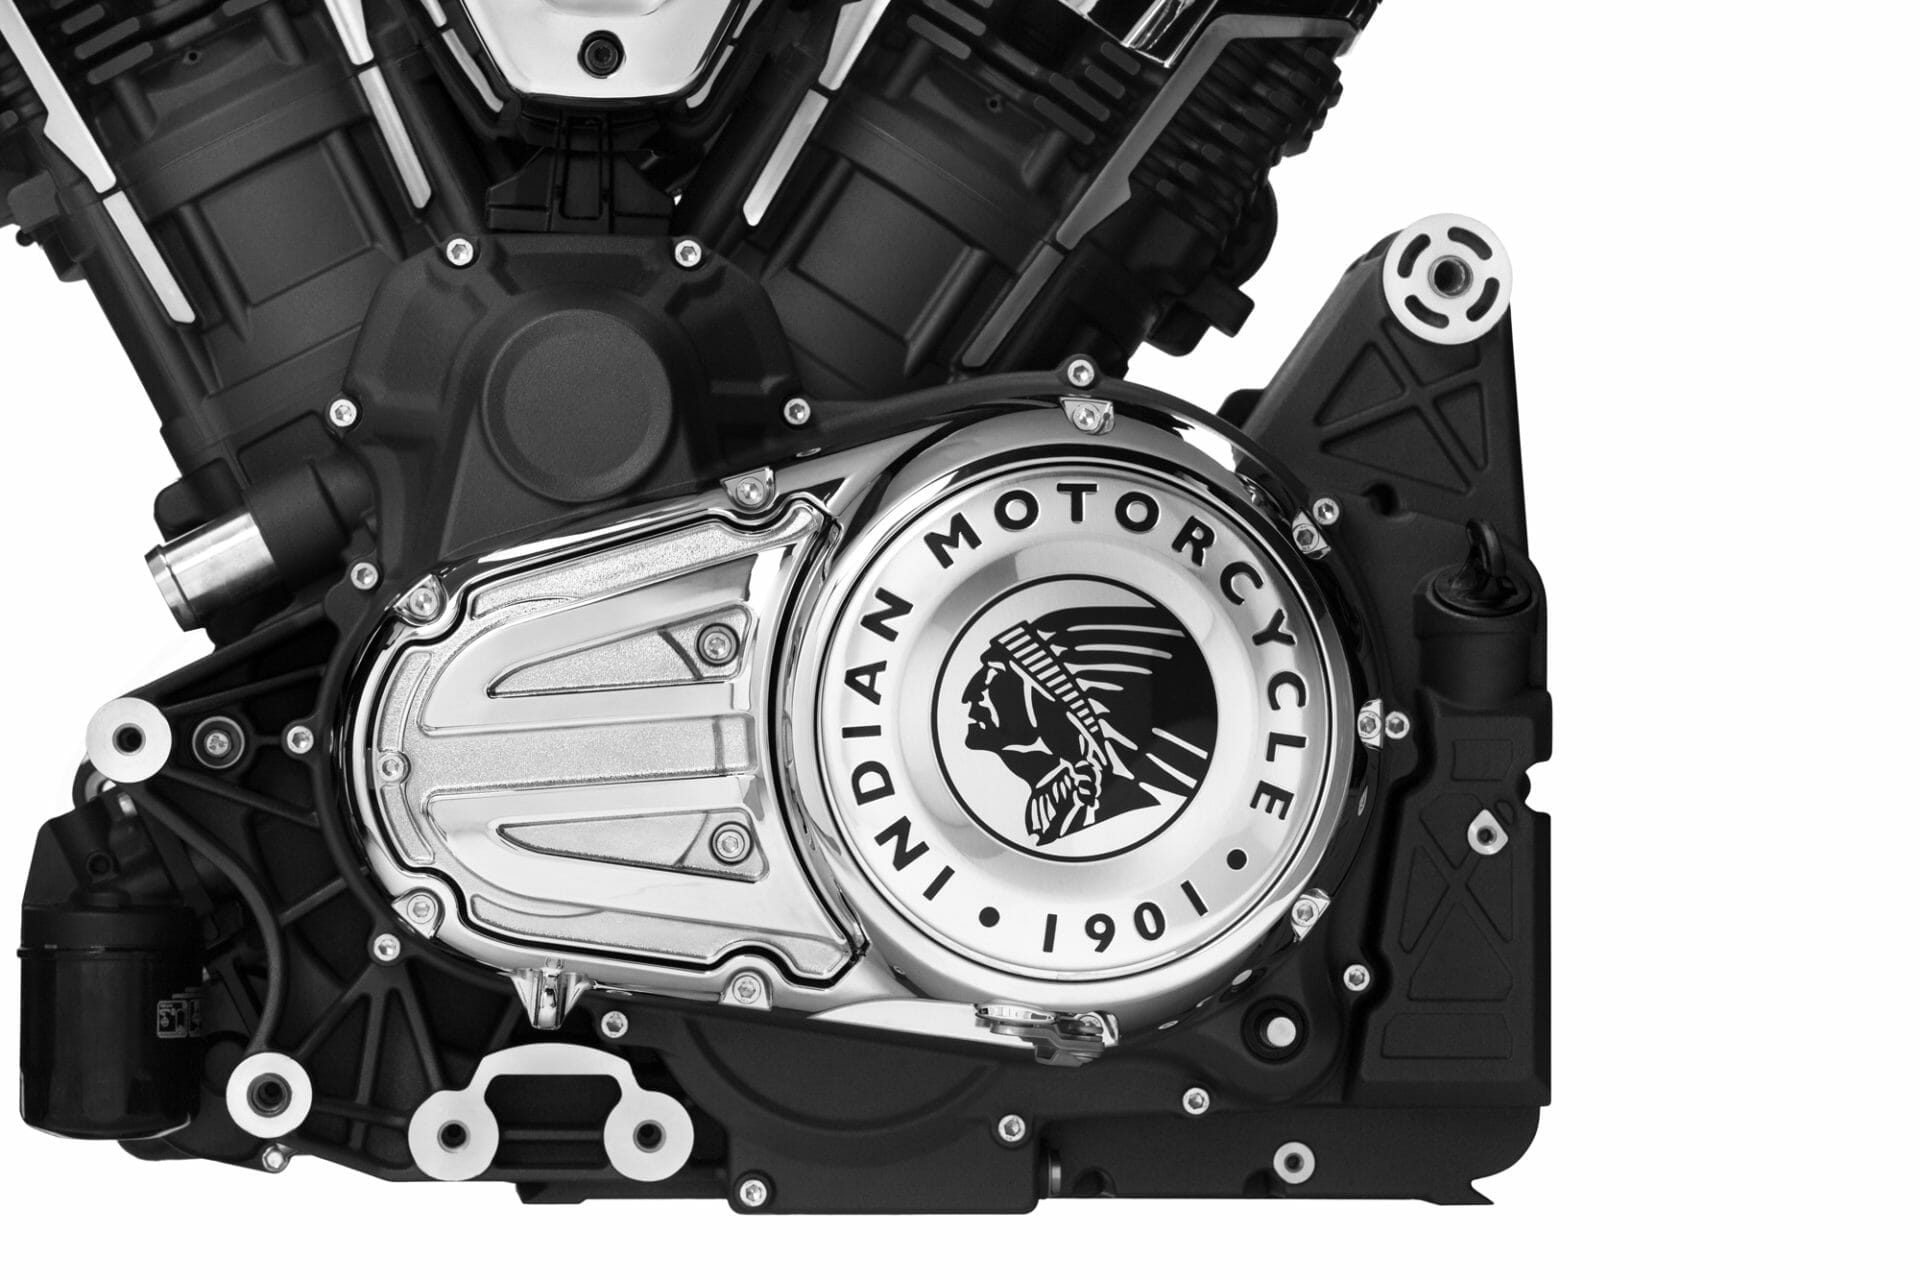 Neuer Indian Motor vorgestellt: PowerPlus